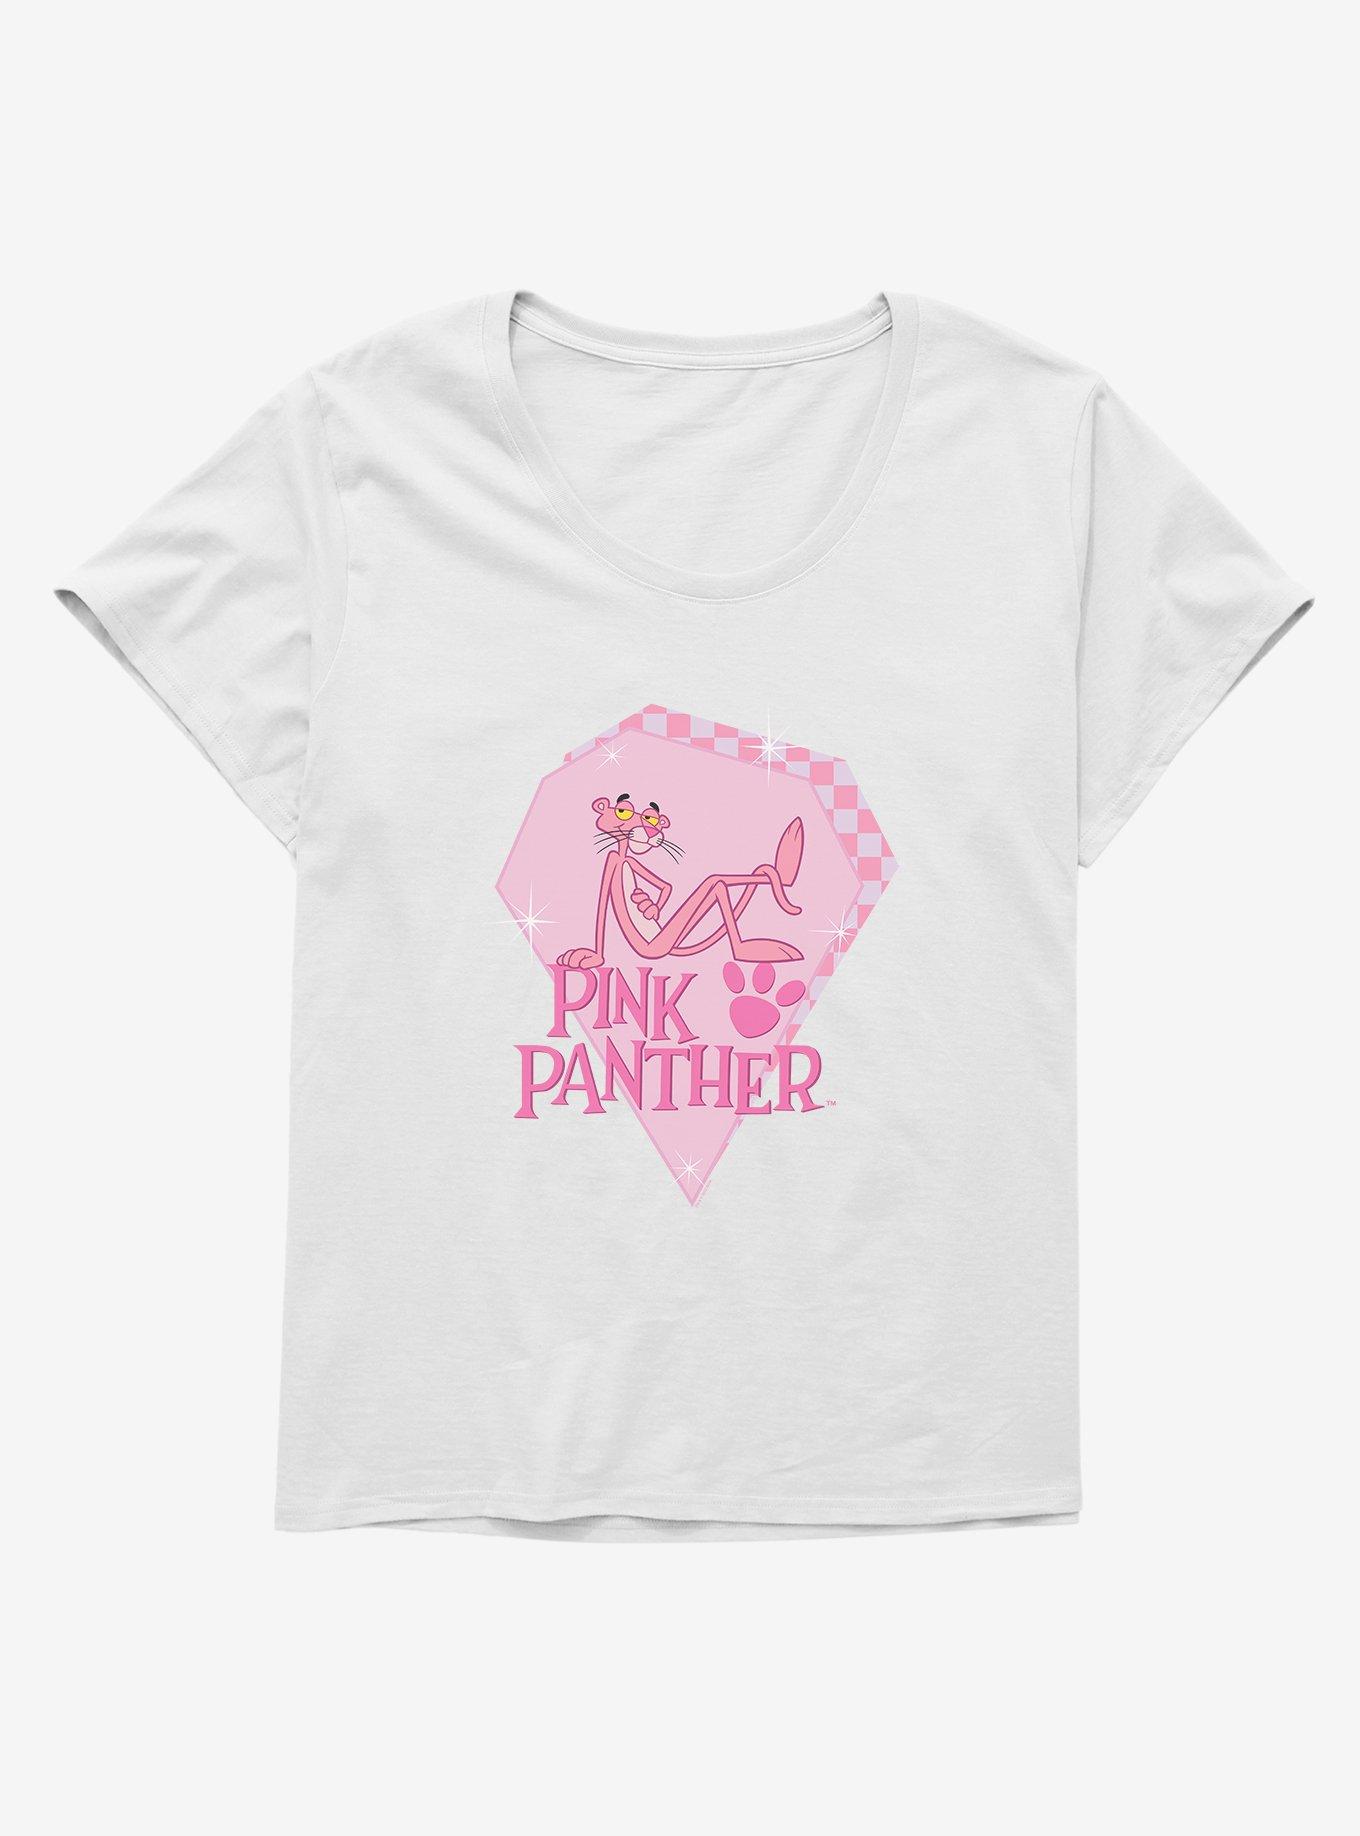 Pink Panther Diamond Girls T-Shirt Plus